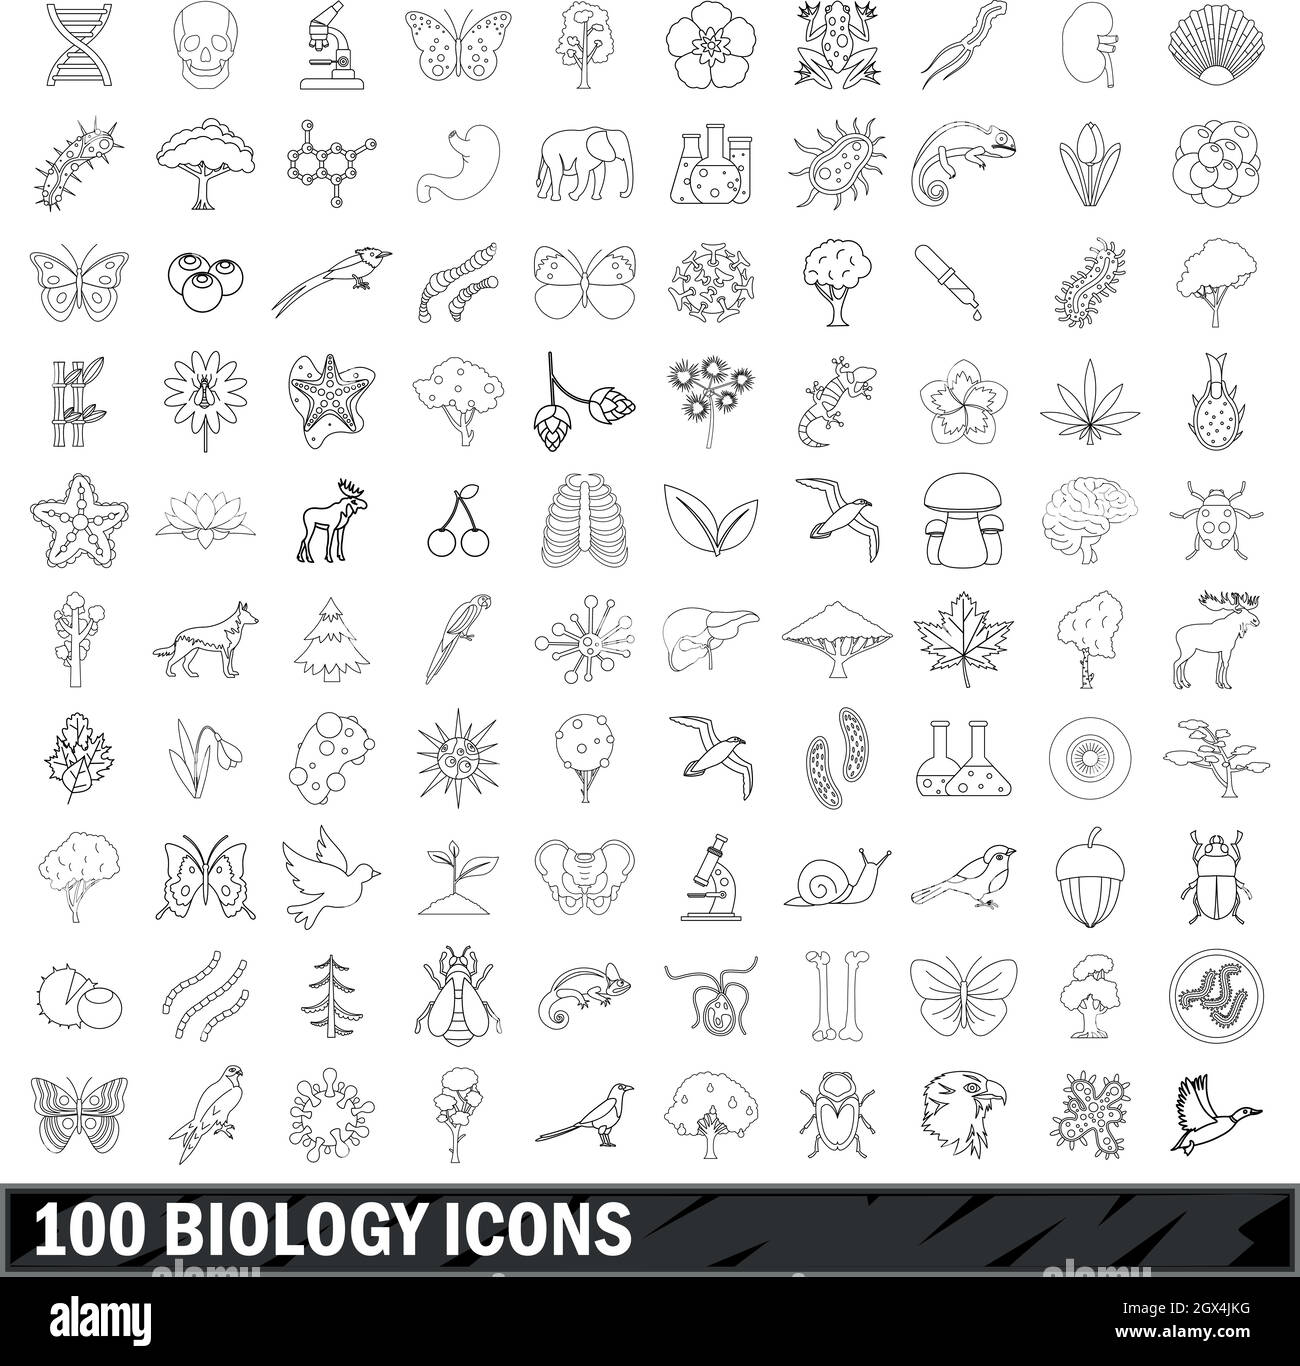 100 Biologia set di icone di stile di contorno Illustrazione Vettoriale